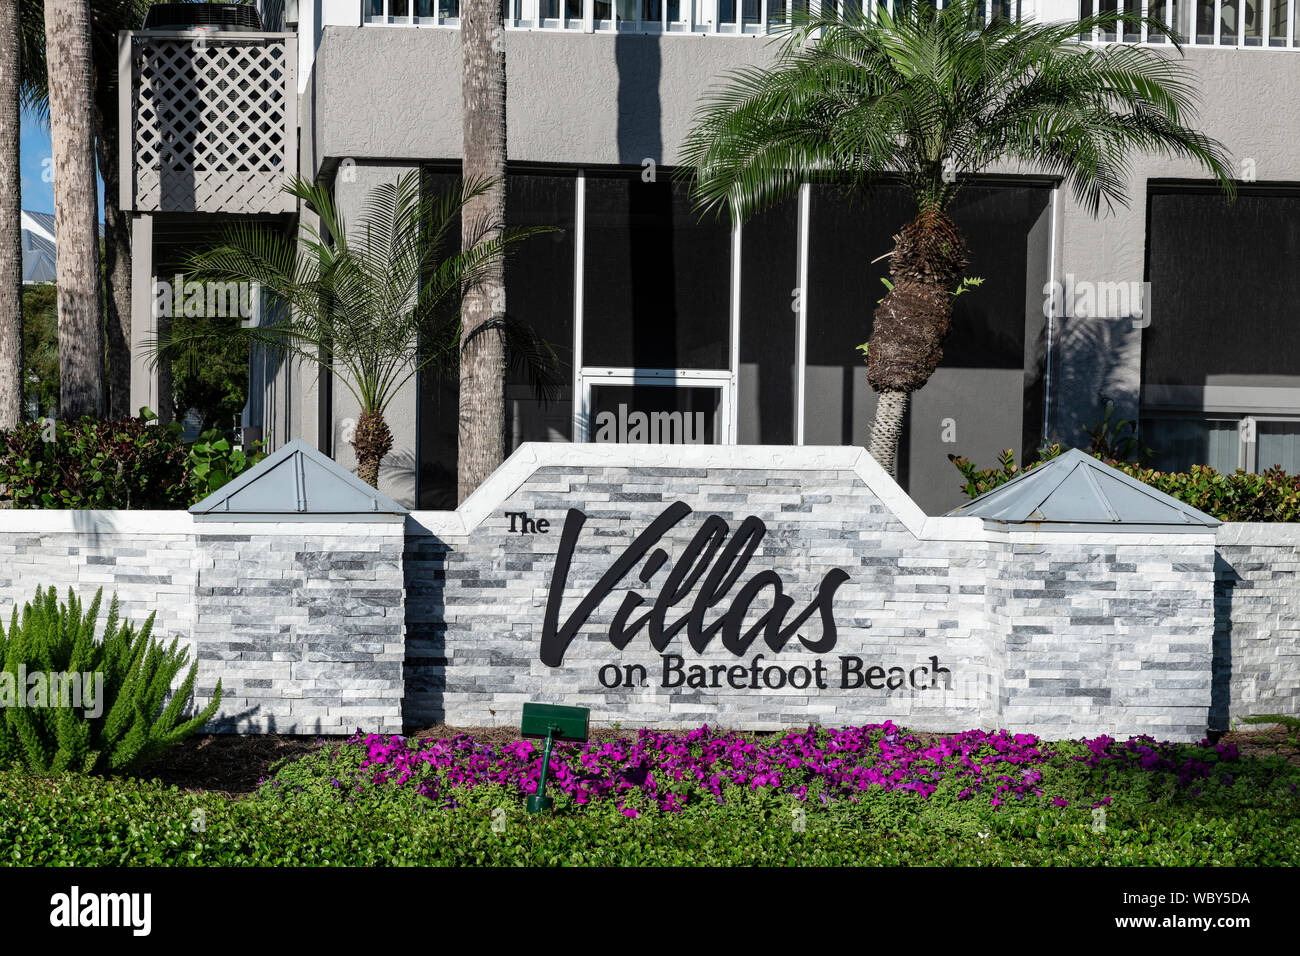 Les villas sur la plage pieds nus, Bonita Springs, en Floride, aux États-Unis. Banque D'Images